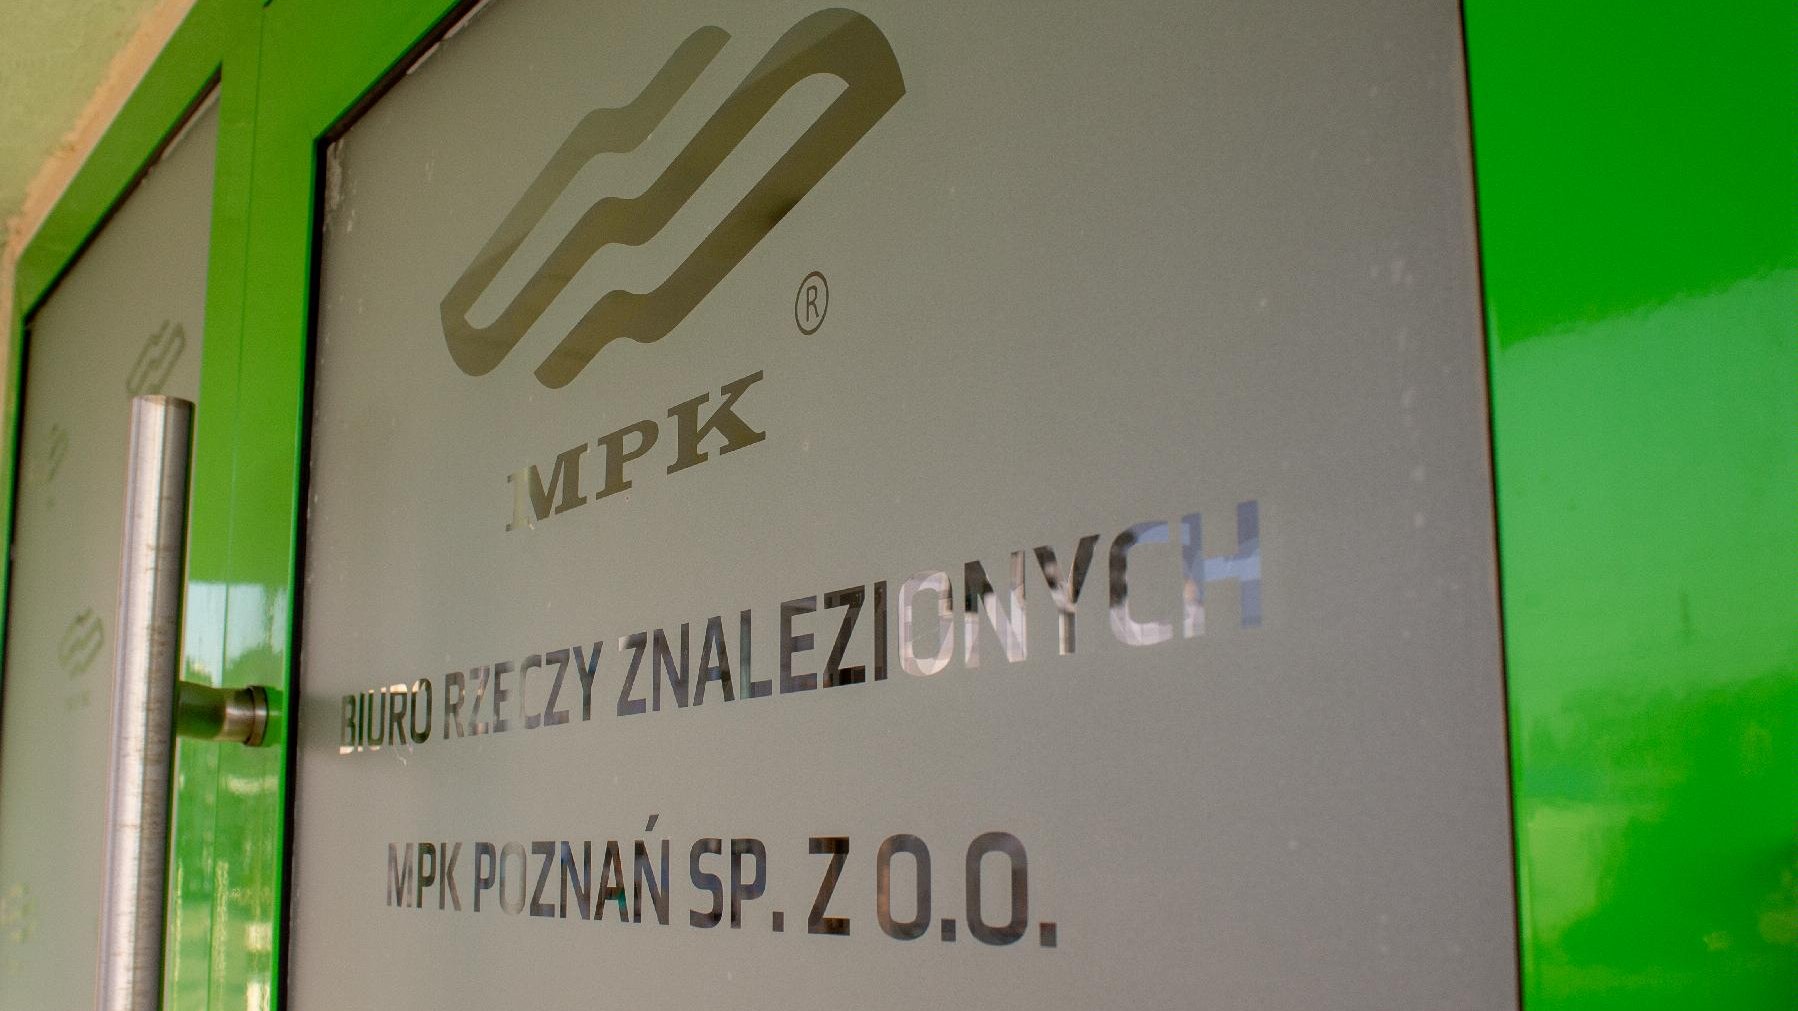 Drzwi Biura Rzeczy Znalezionych MPK Poznań